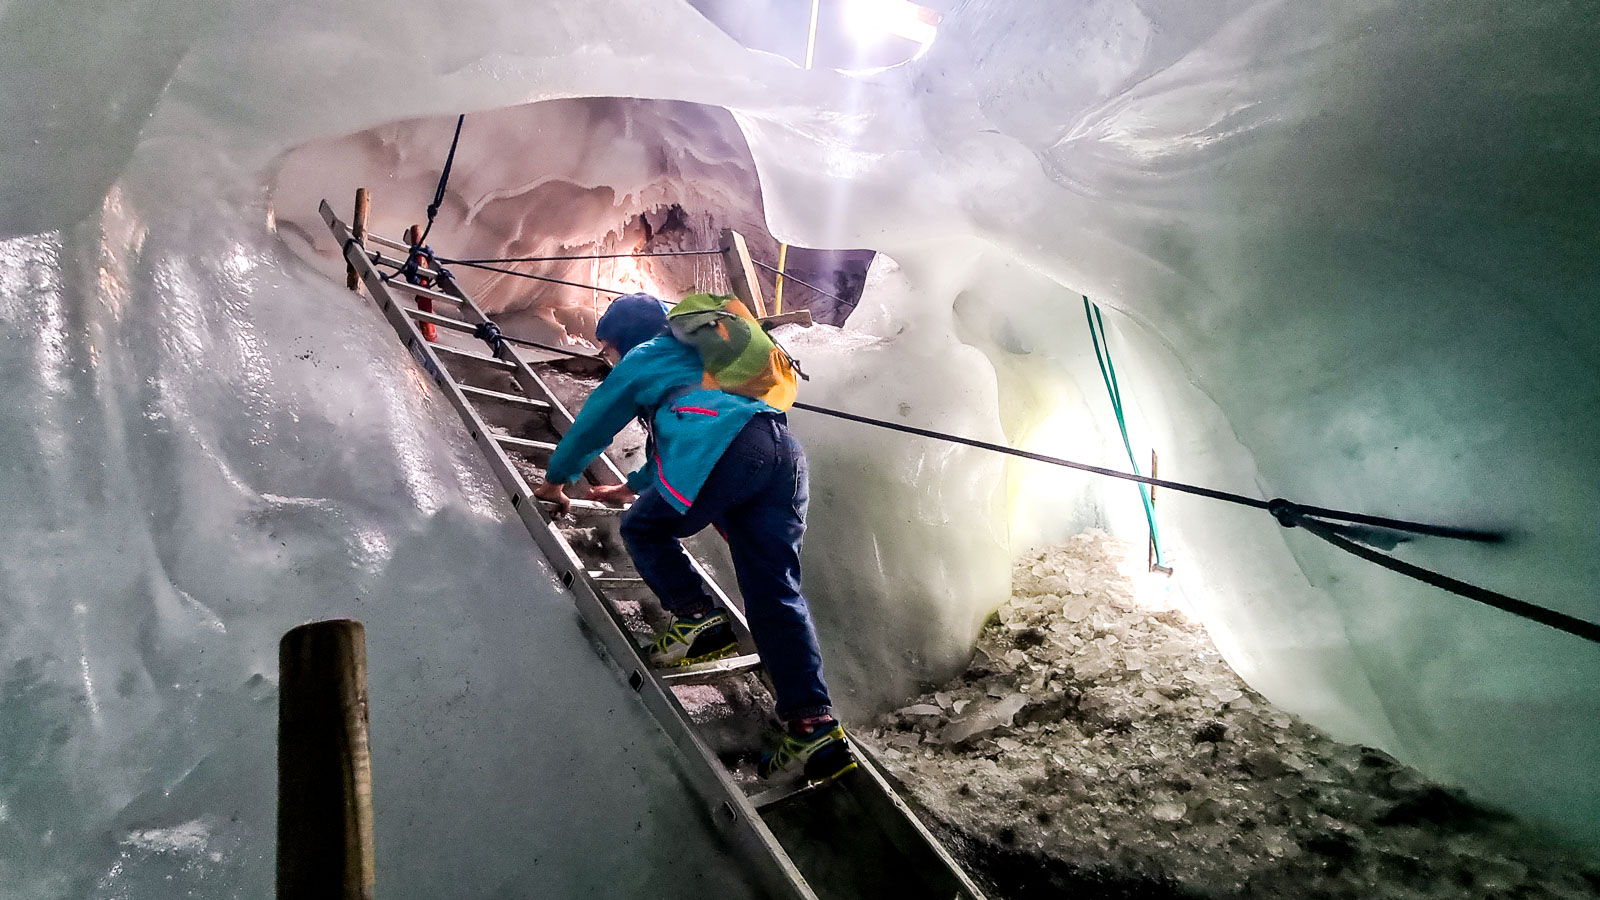 La grotte de glace à Hintertux en Autriche 